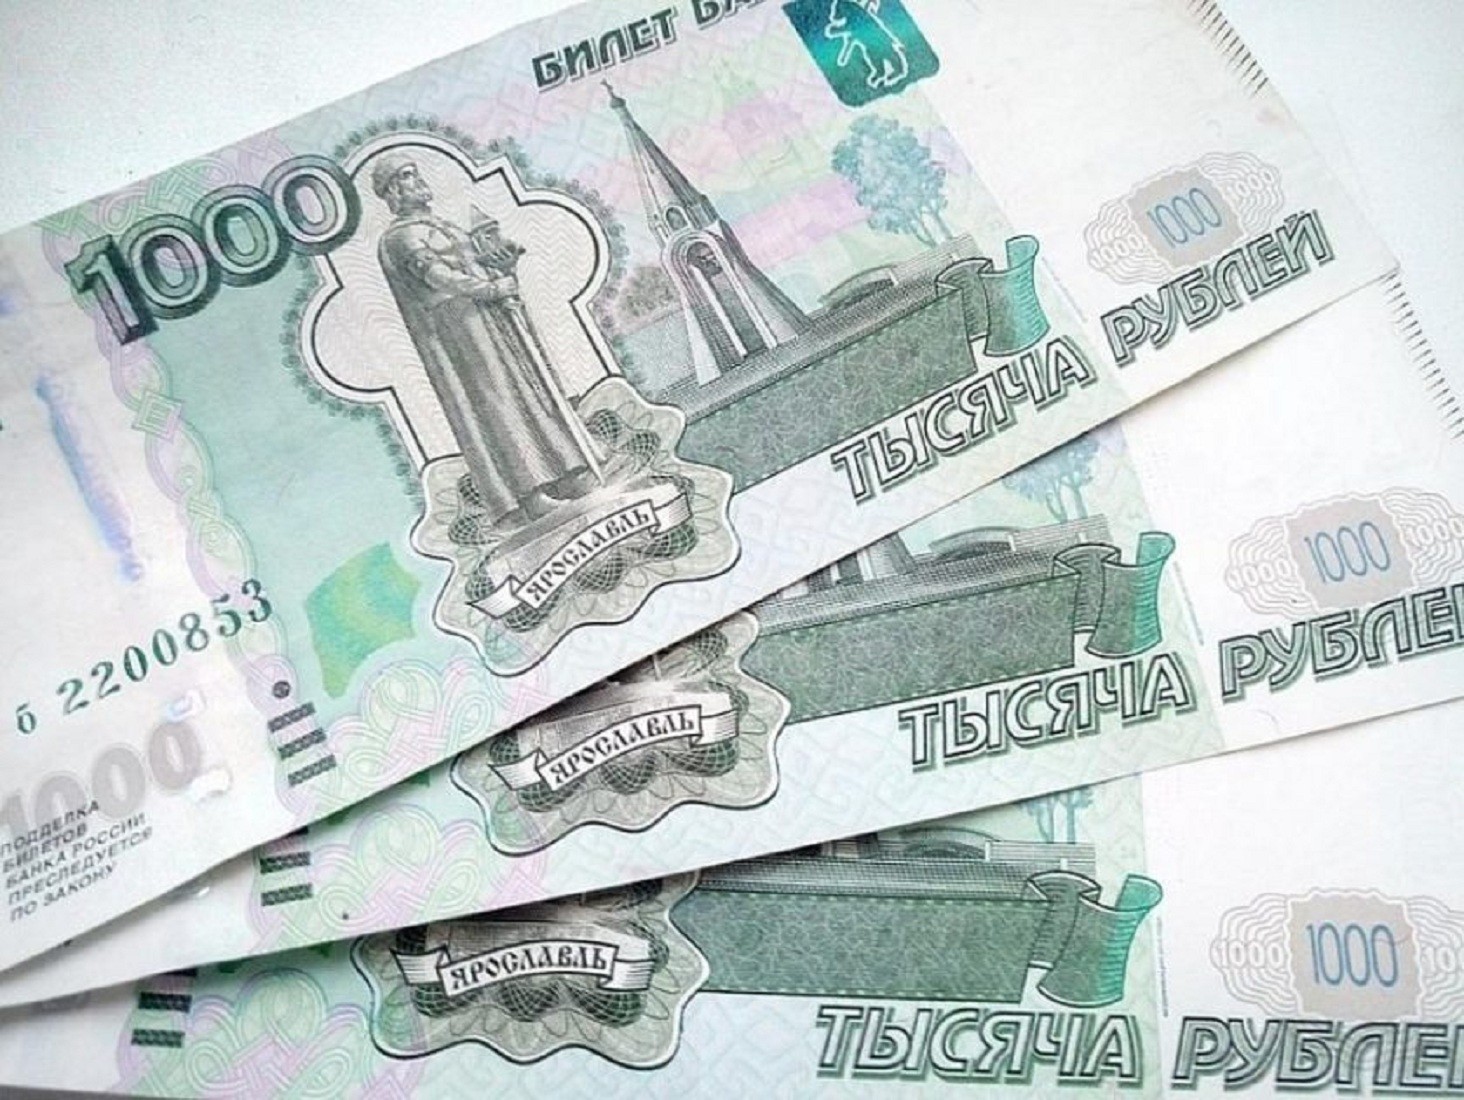 Работникам на удаленке готовы платить до 300 тыс.руб.